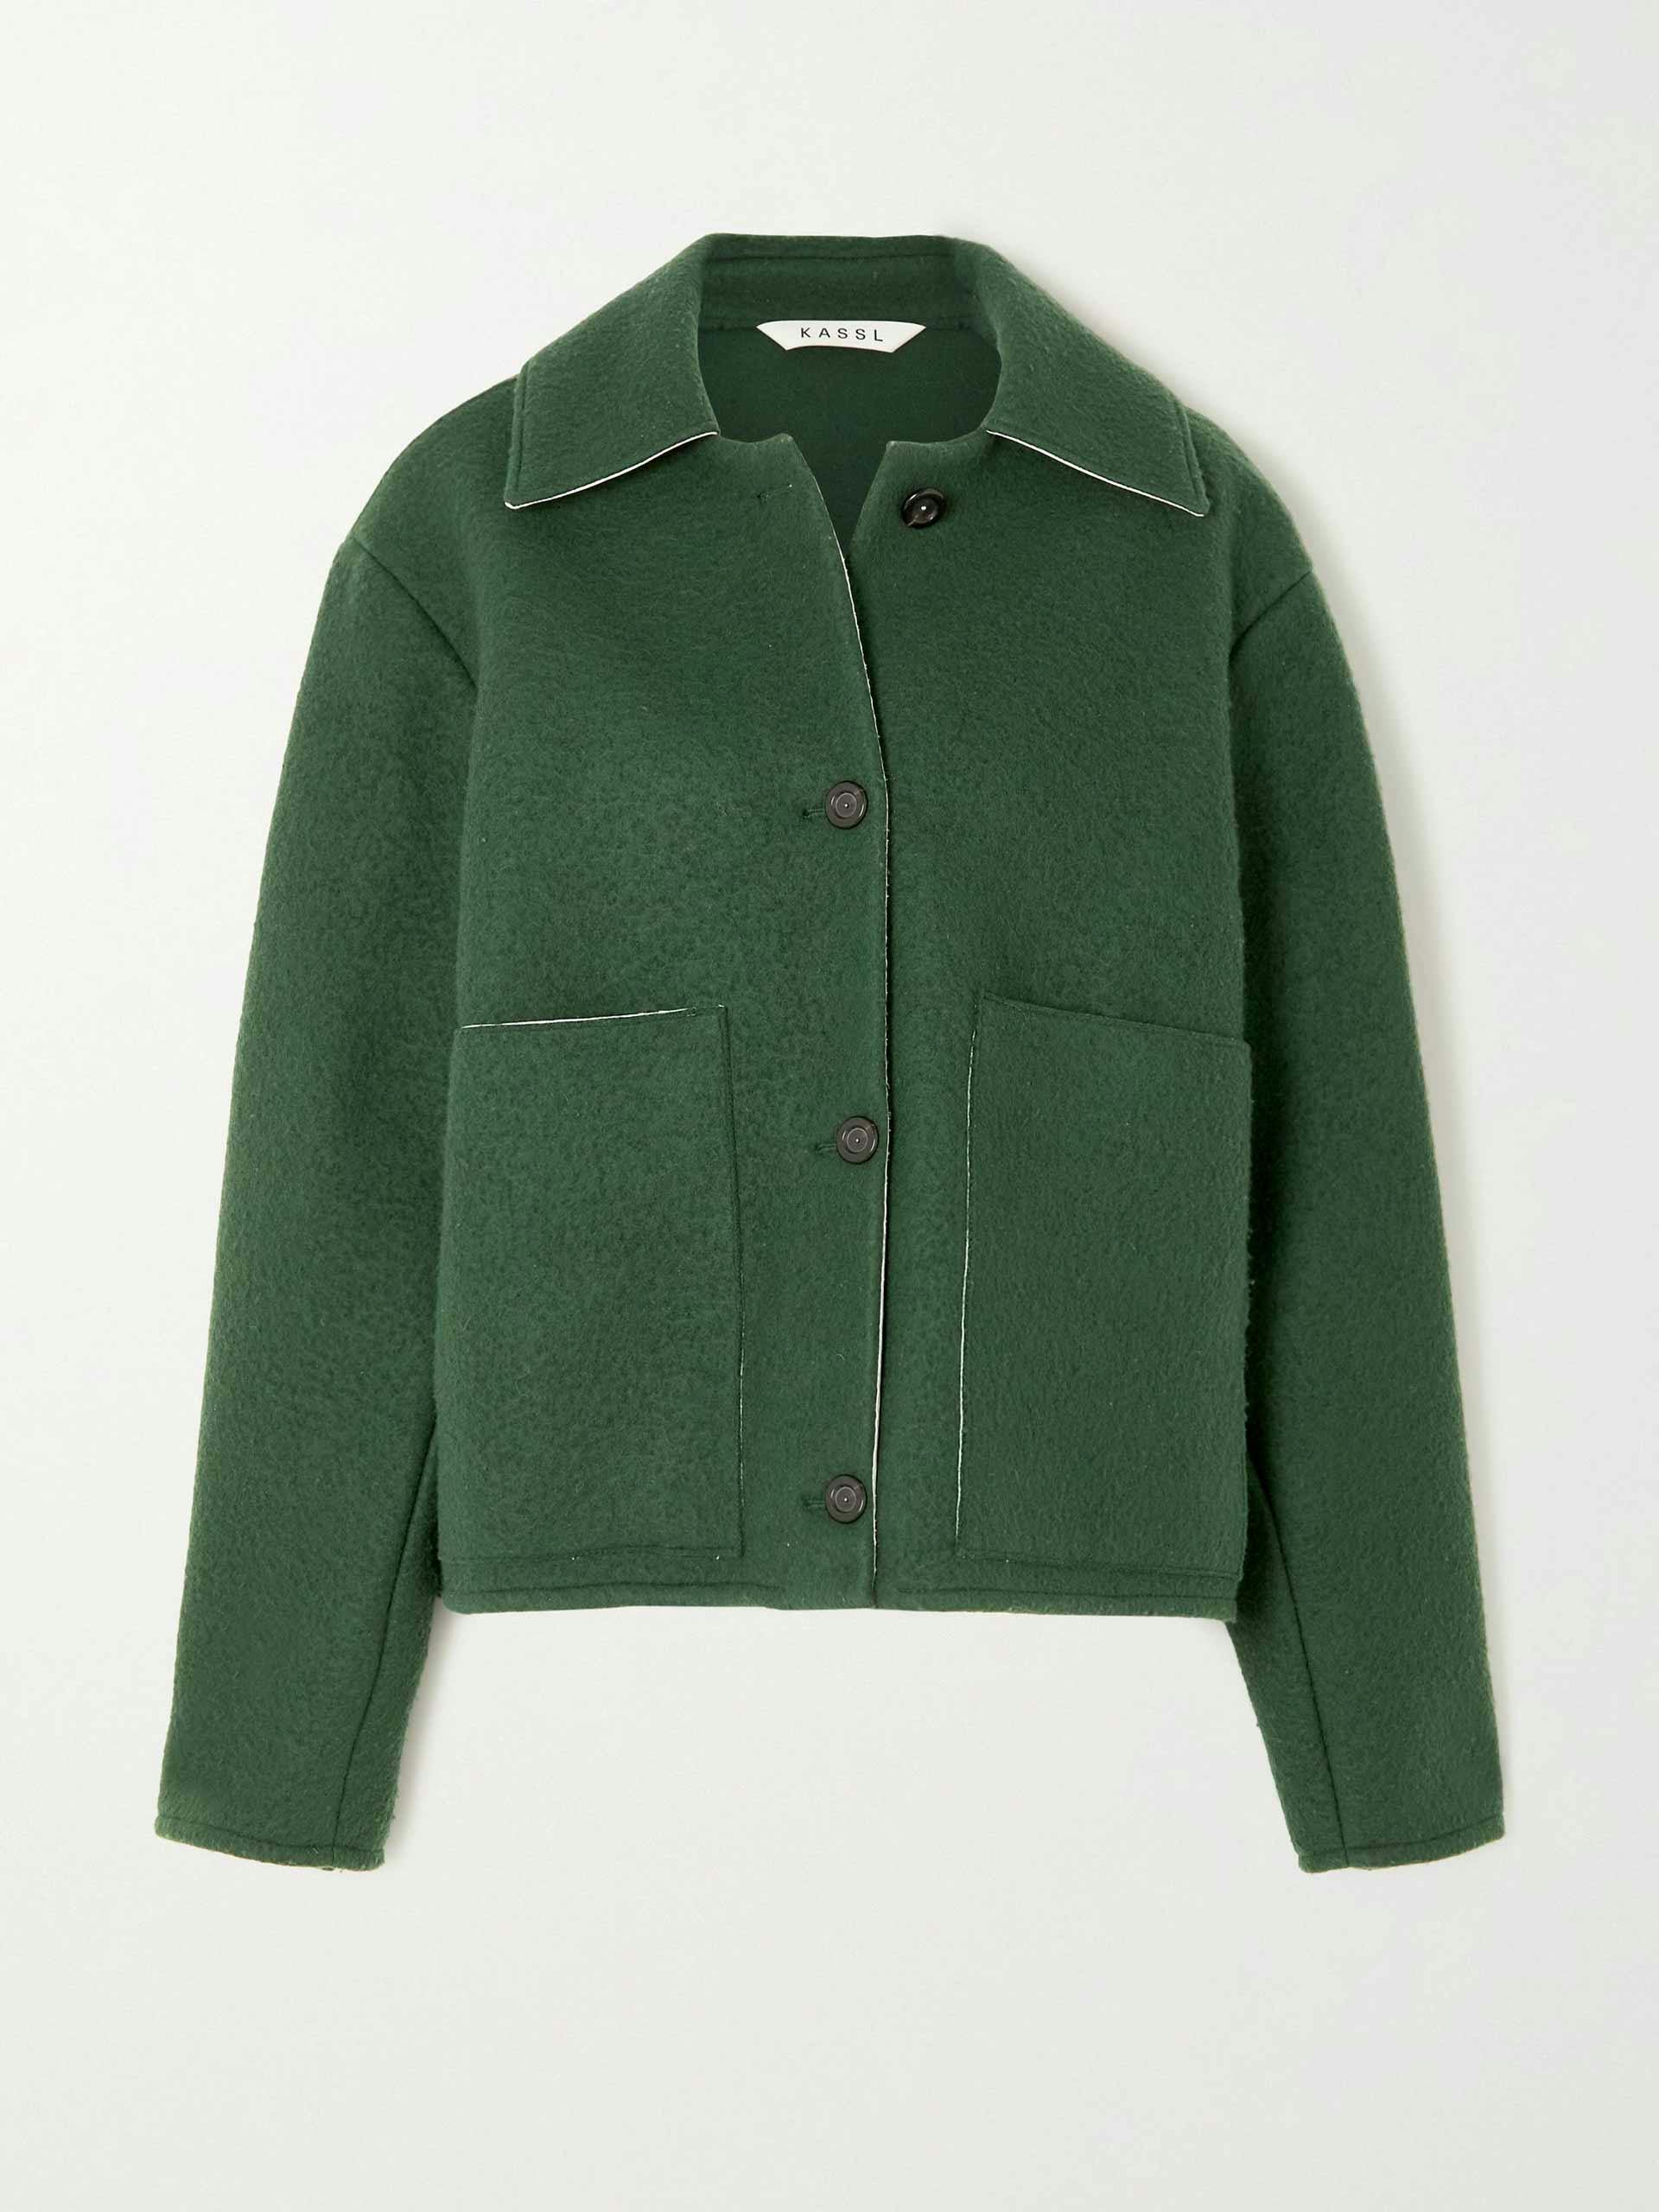 Green wool-felt jacket